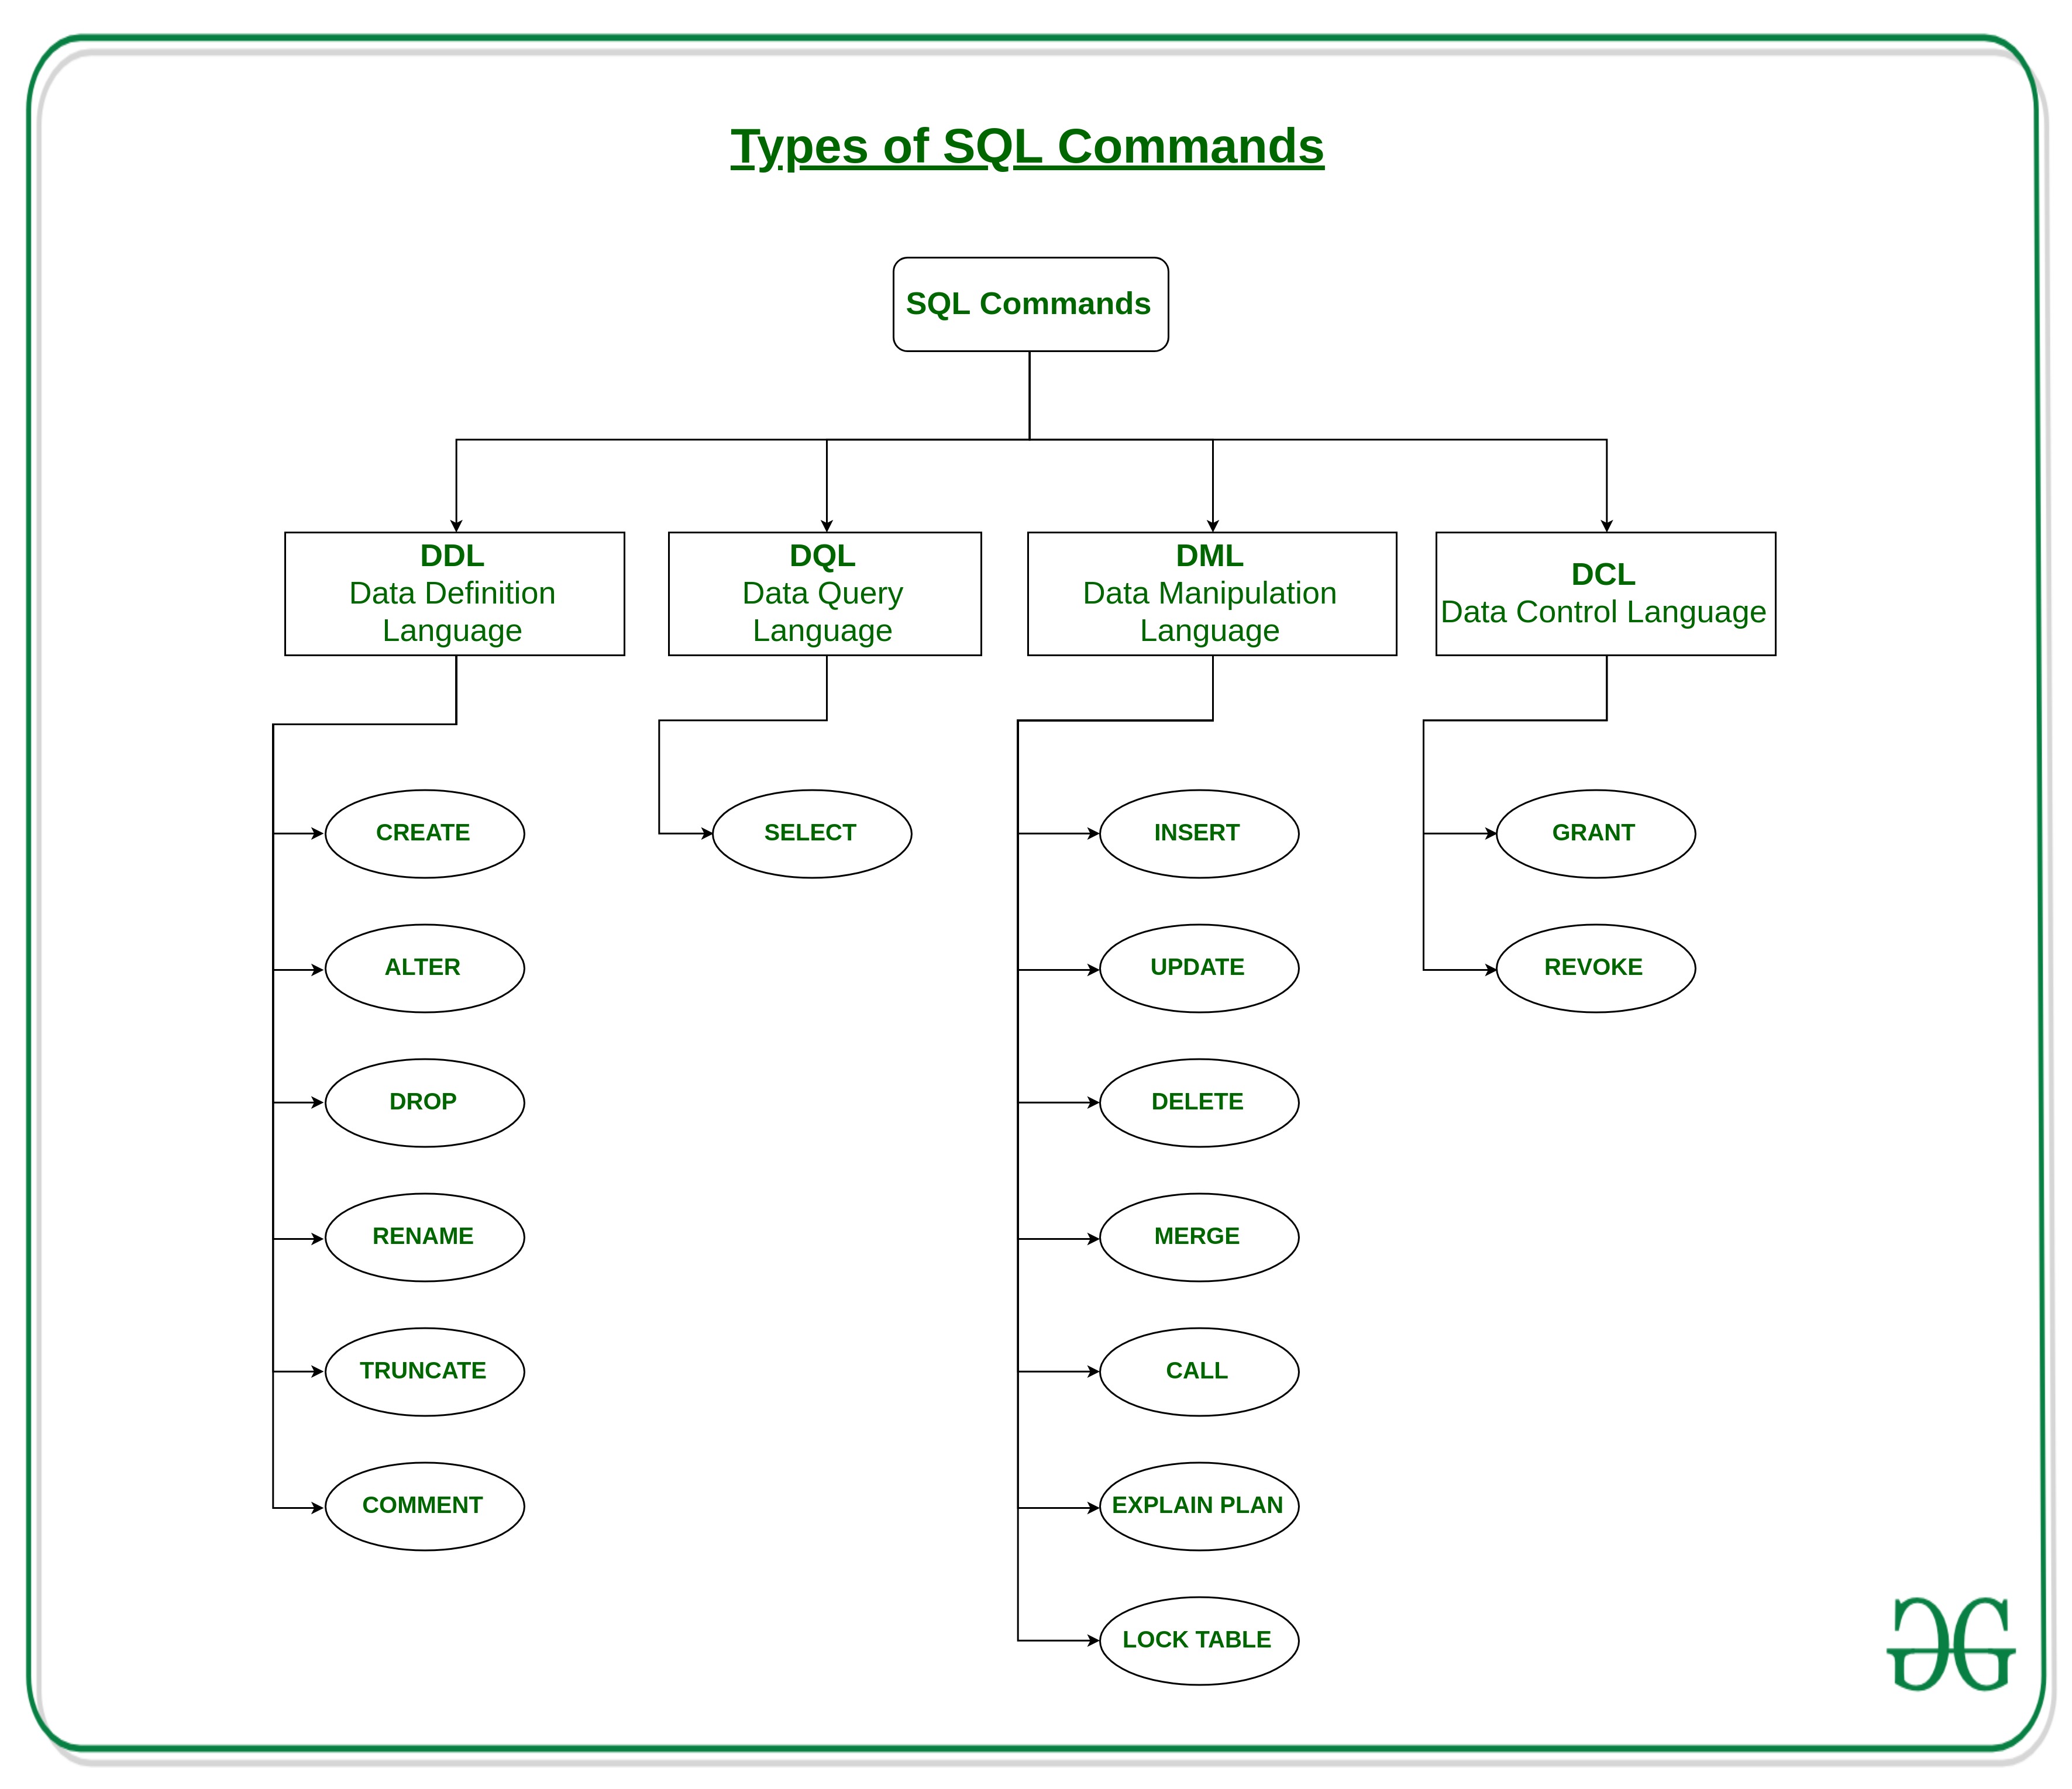 SQL commands